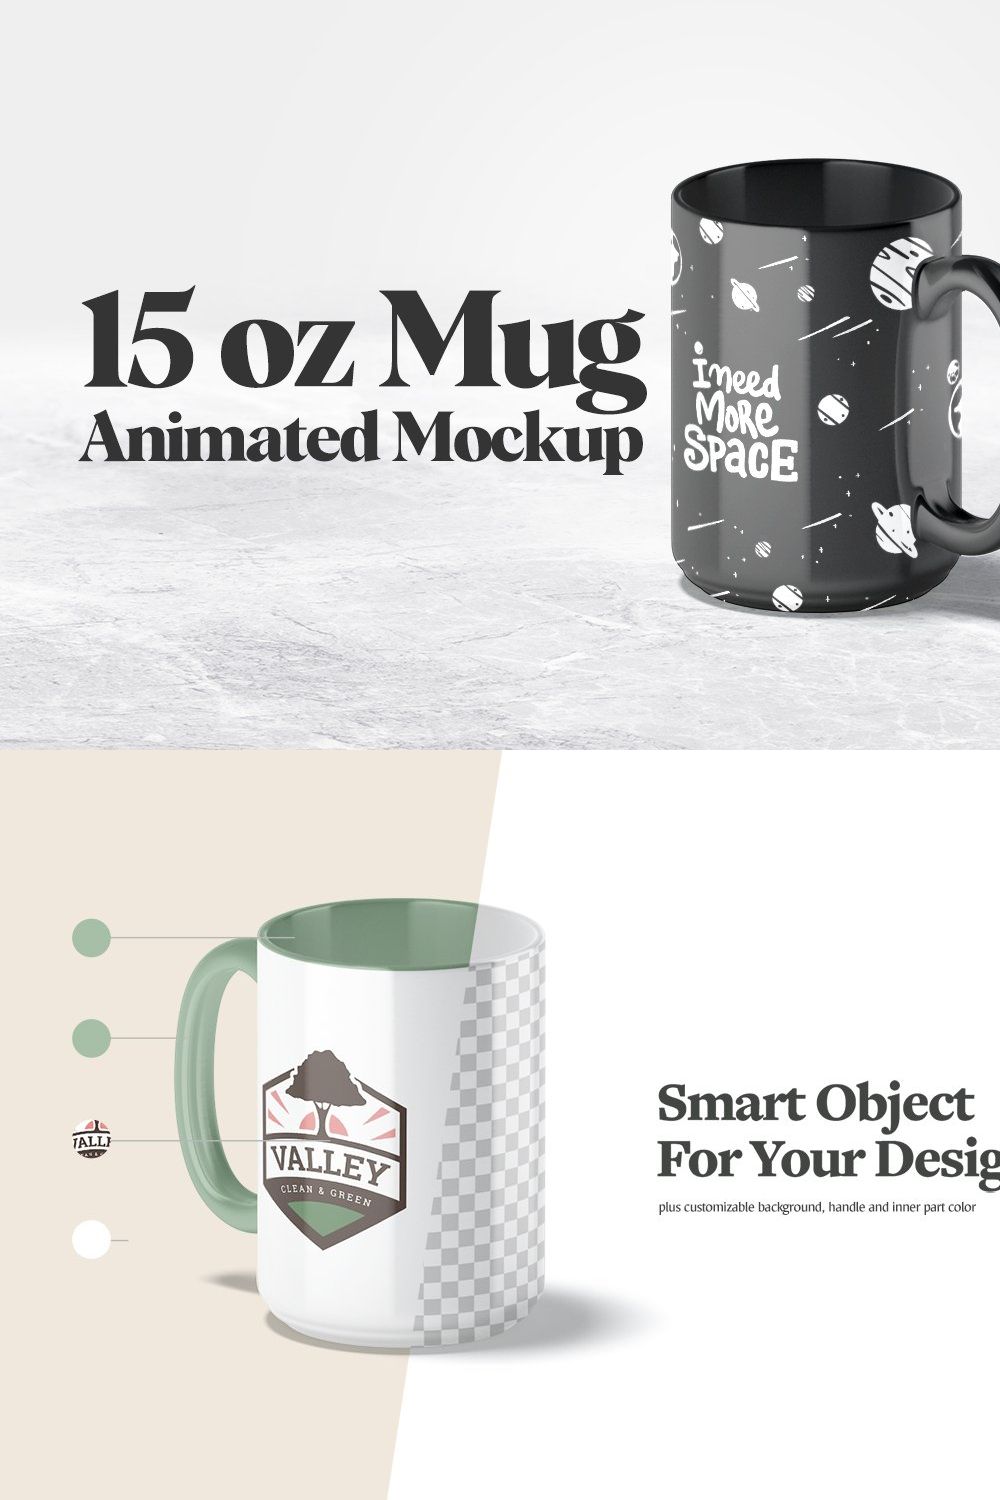 15oz Mug Animated Mockup pinterest preview image.